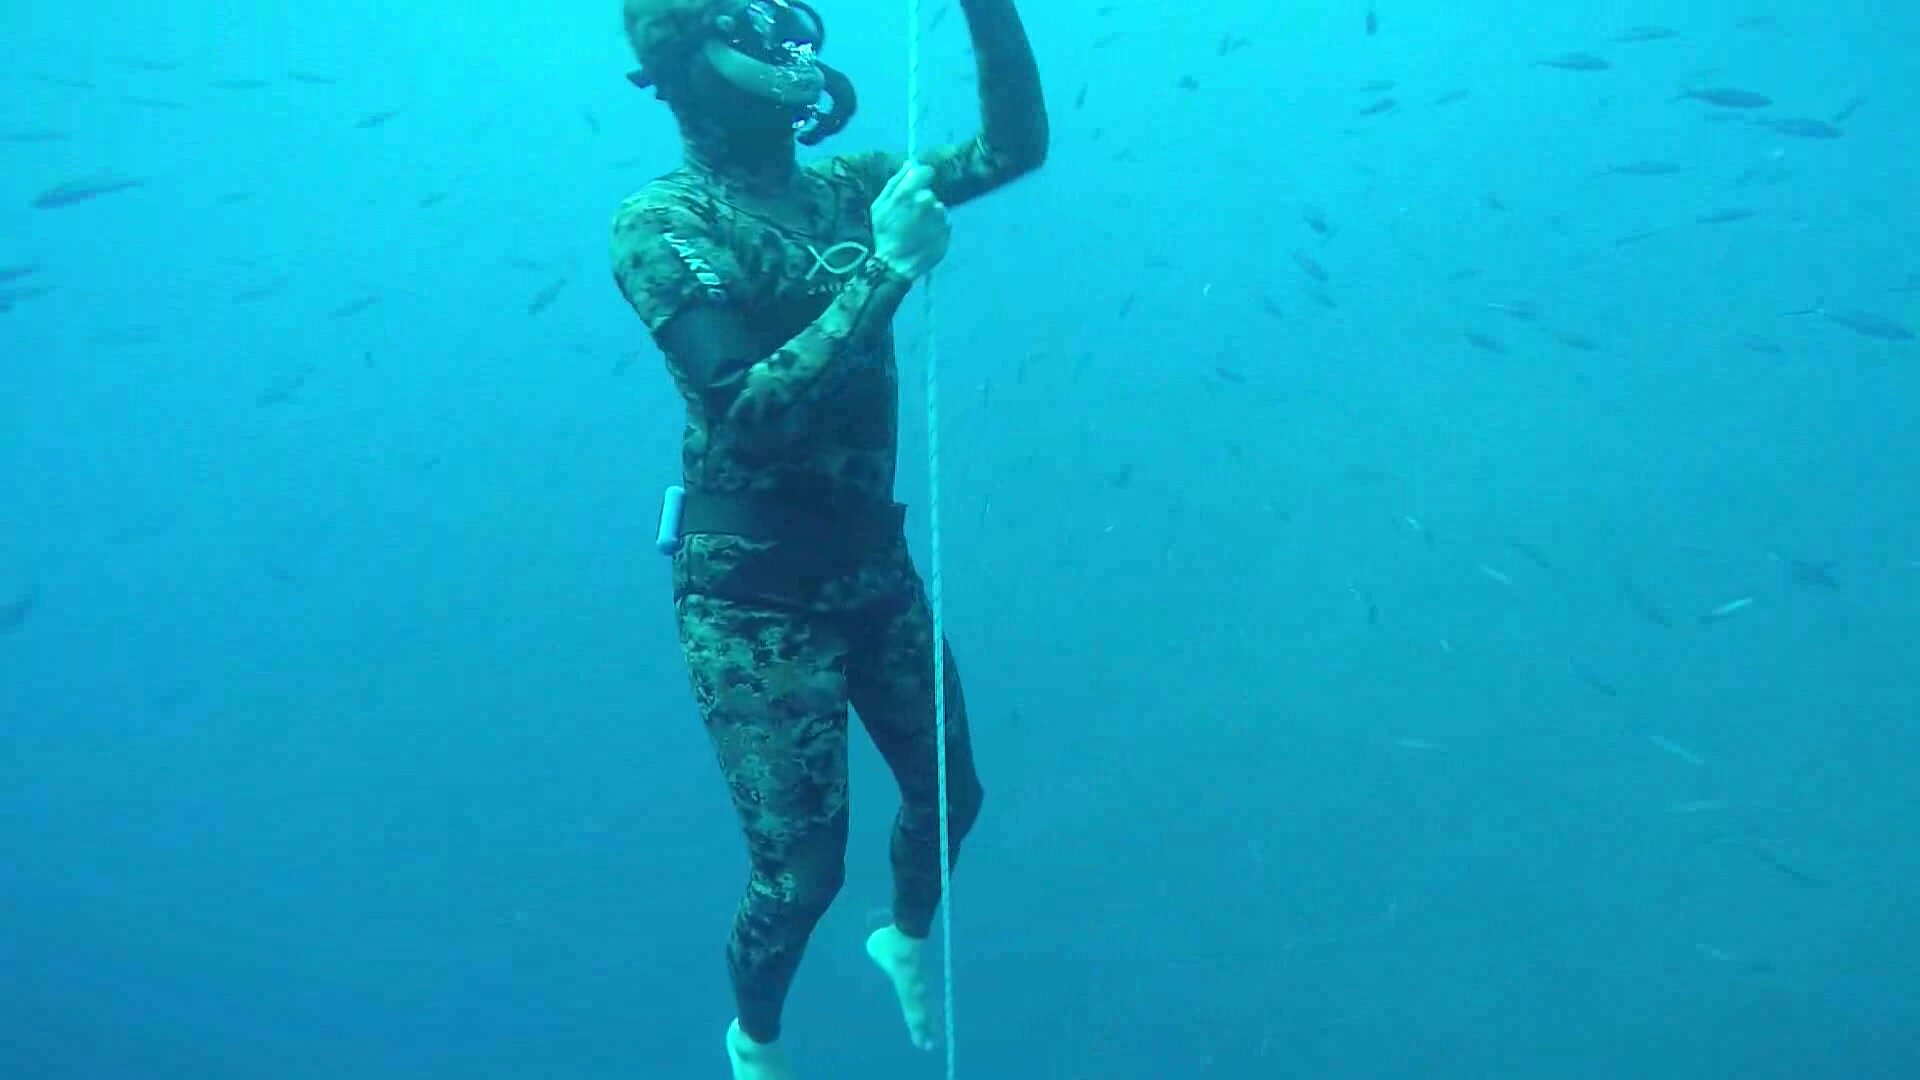 Bareffet arab freediver underwater in wetsuit